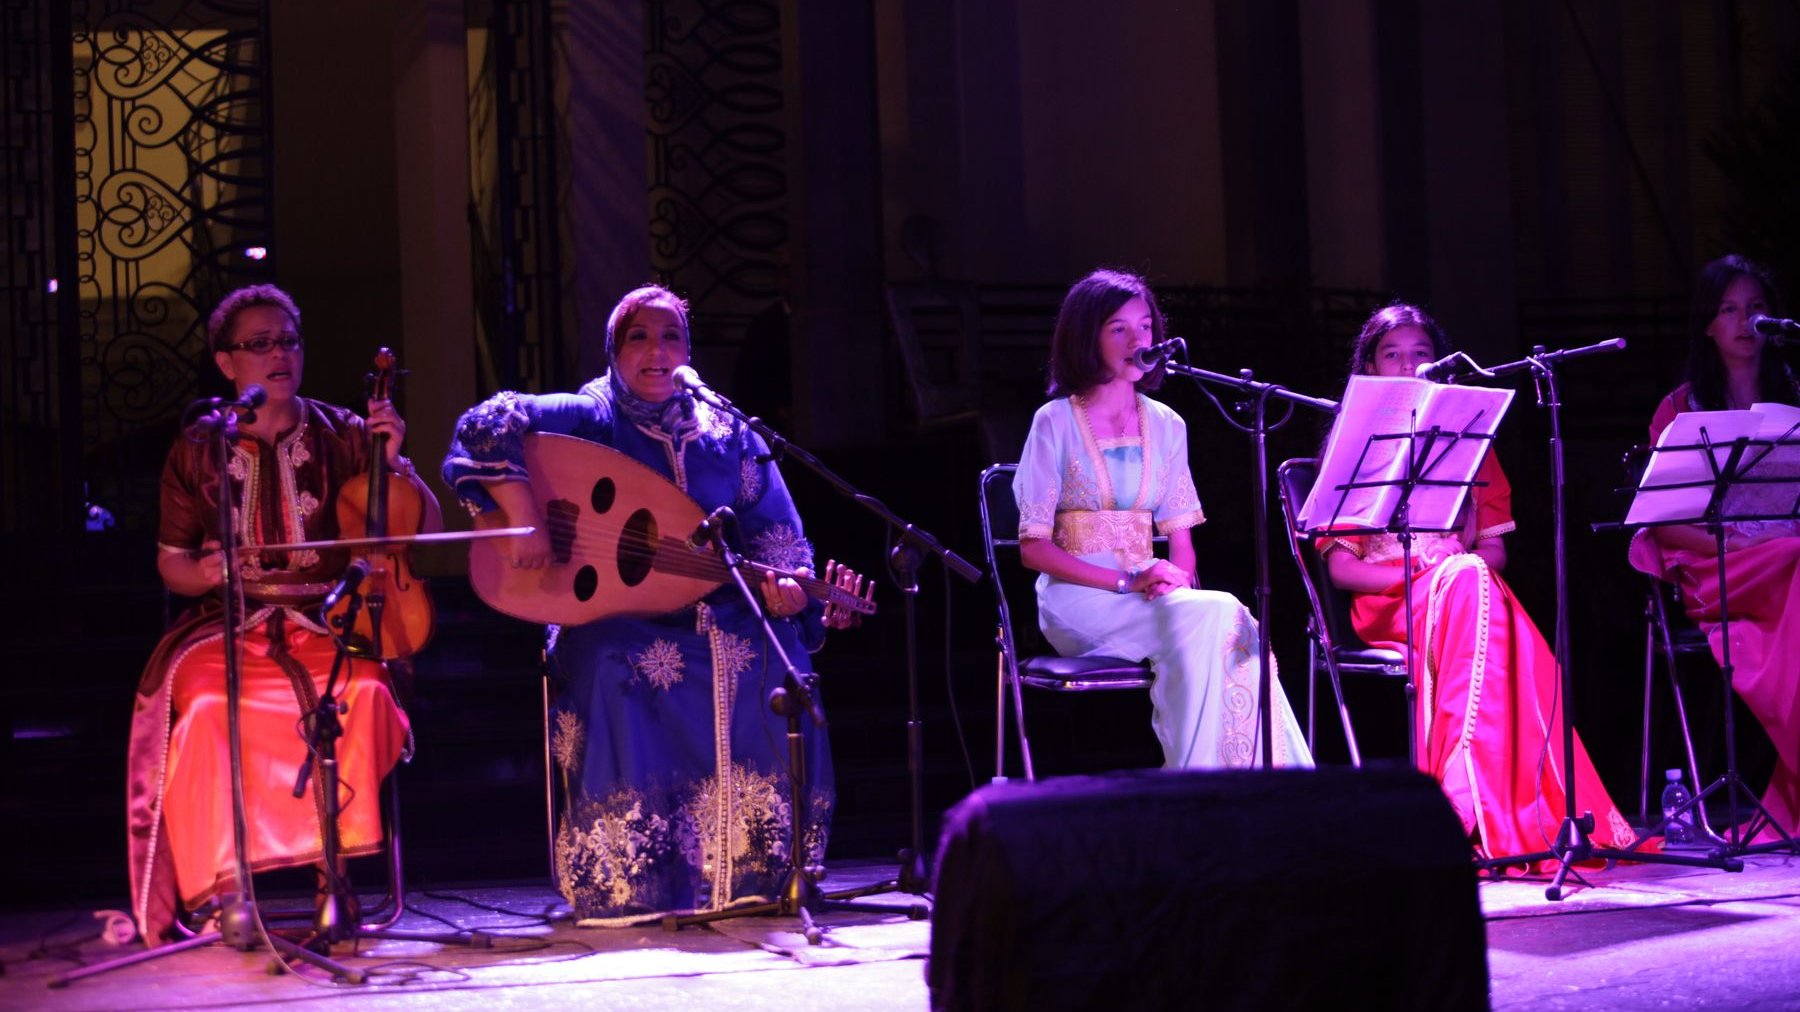 Nouhaila El Kalai, membre de l’association Bouzoubaa de melhoun et du groupe féminin fassi du patrimoine musical, fait désormais partie de ces grandes chanteuses marocaines de Malhoun qui participent au rayonnement d'un patrimoine et attirent un vaste public de mélomanes à chaque concert. 
